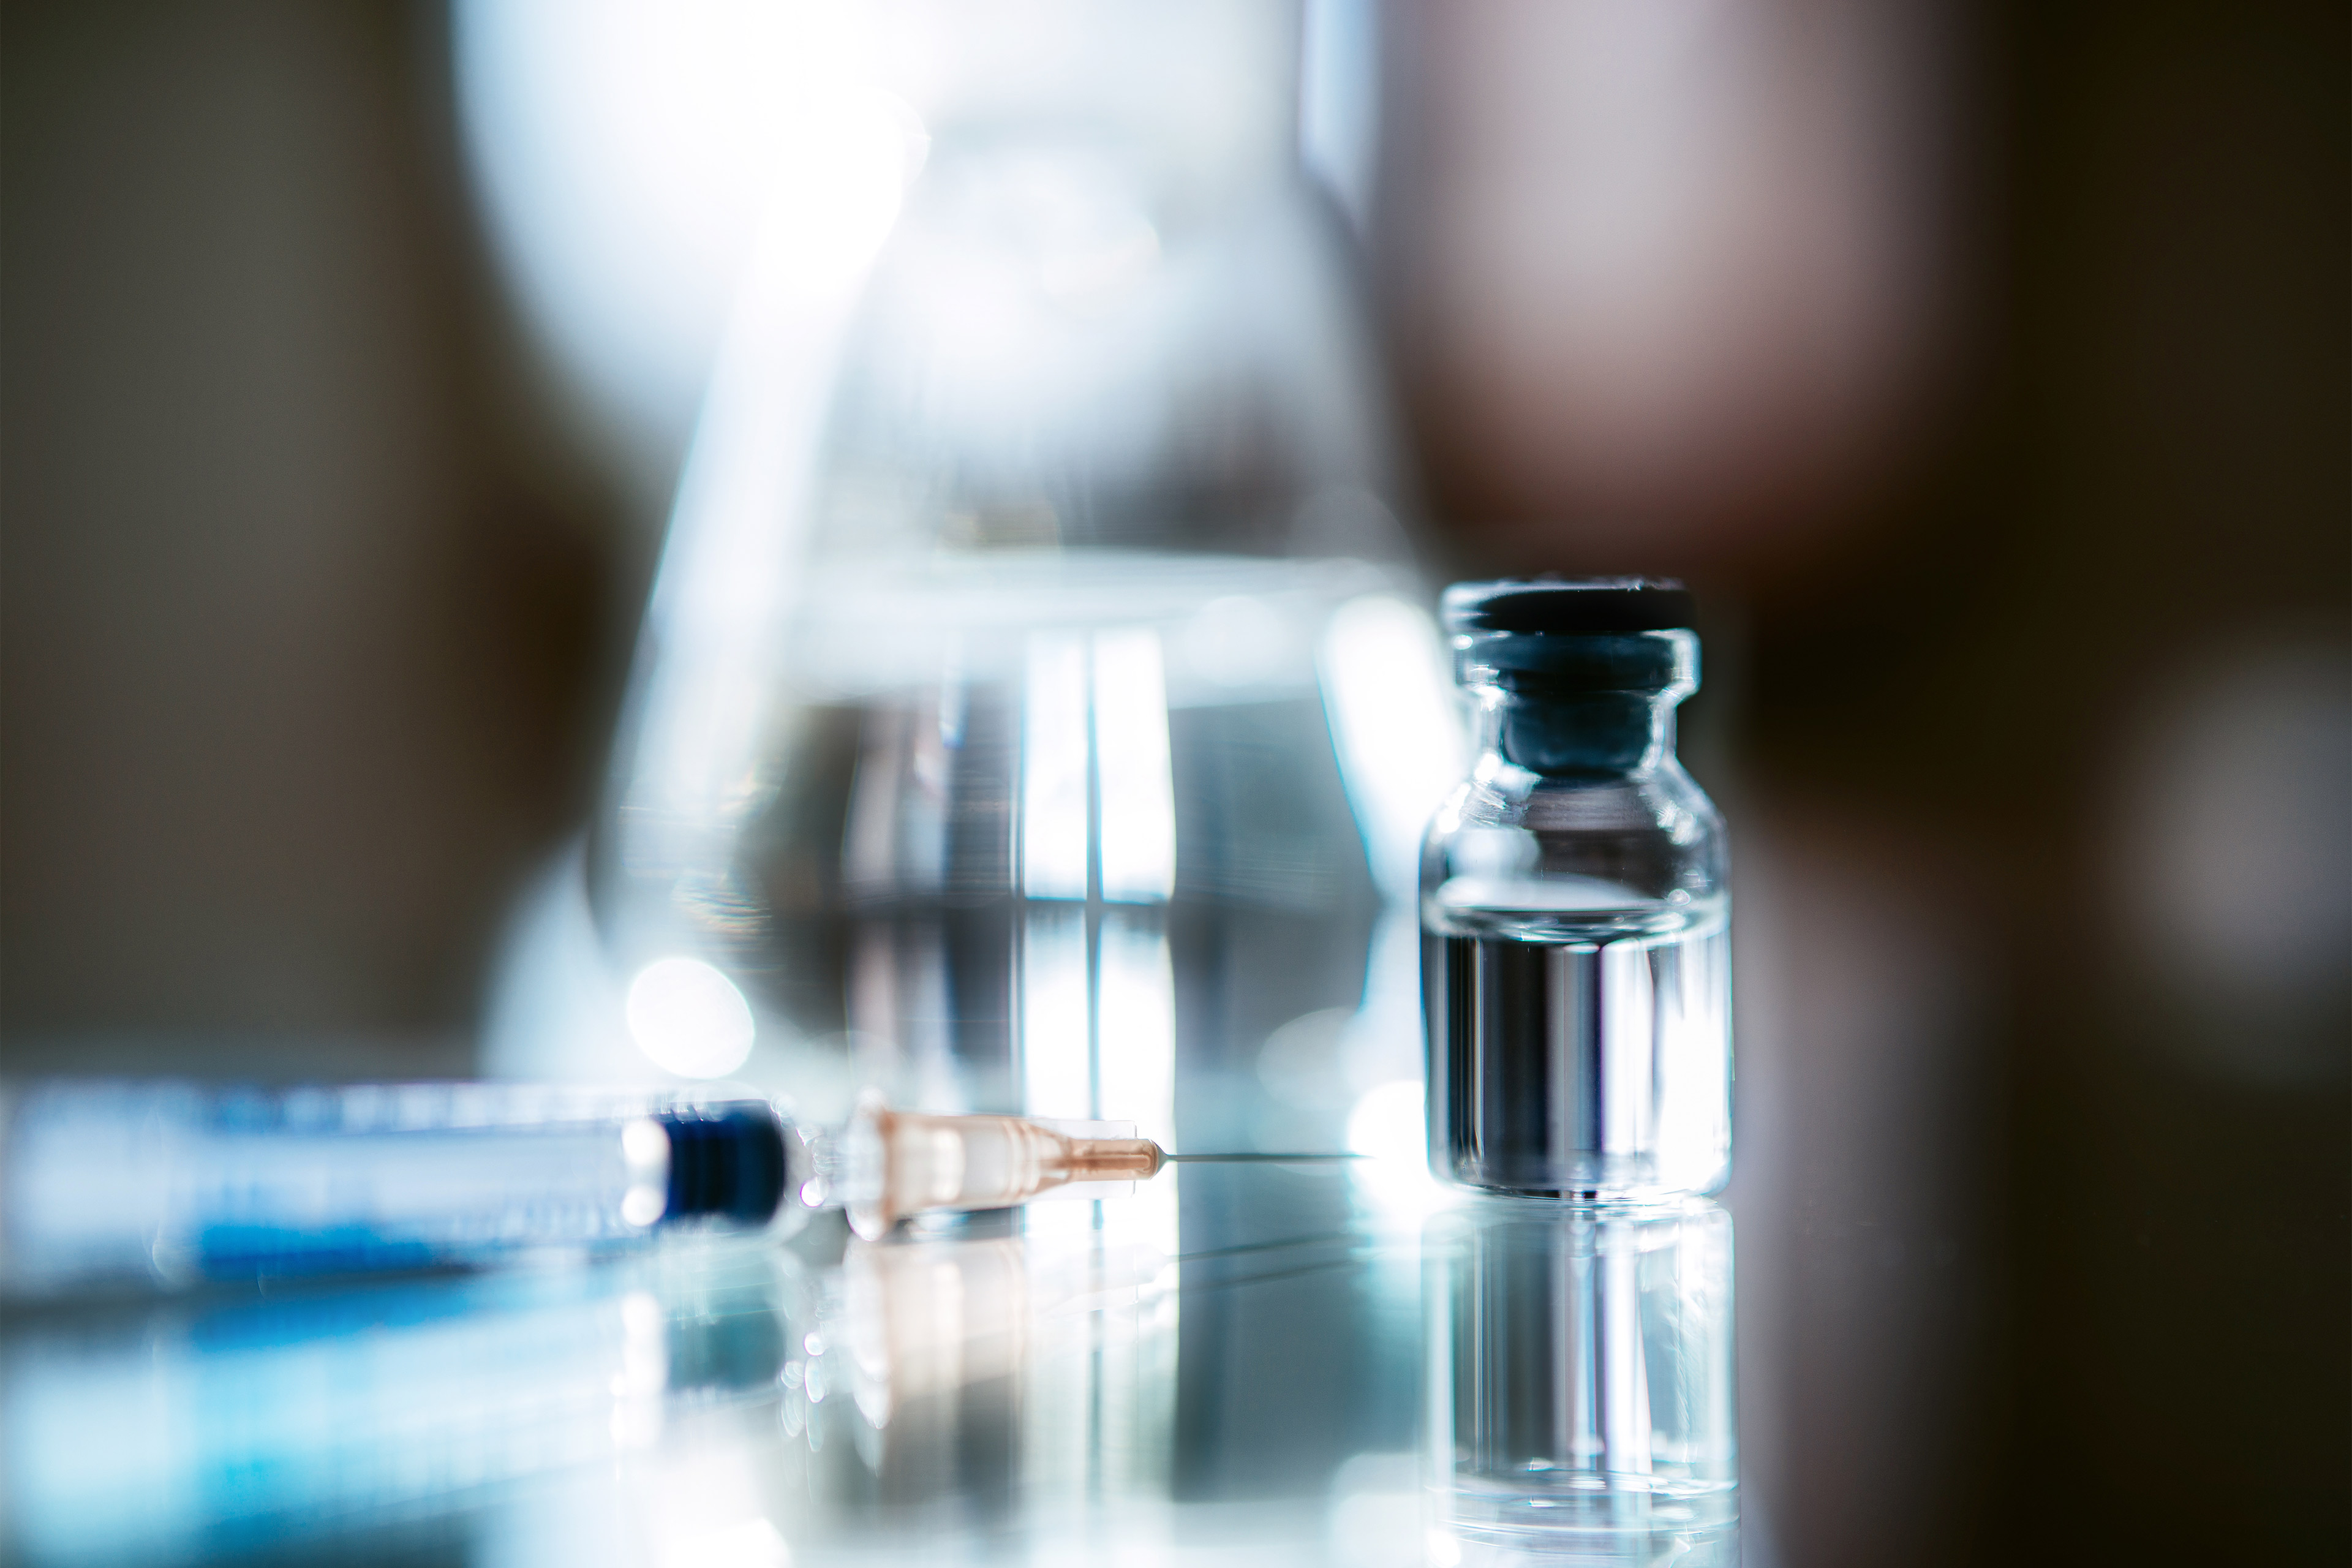 Kalifornien entschied sich für das Generika-Unternehmen Civica, um kostengünstiges Insulin herzustellen